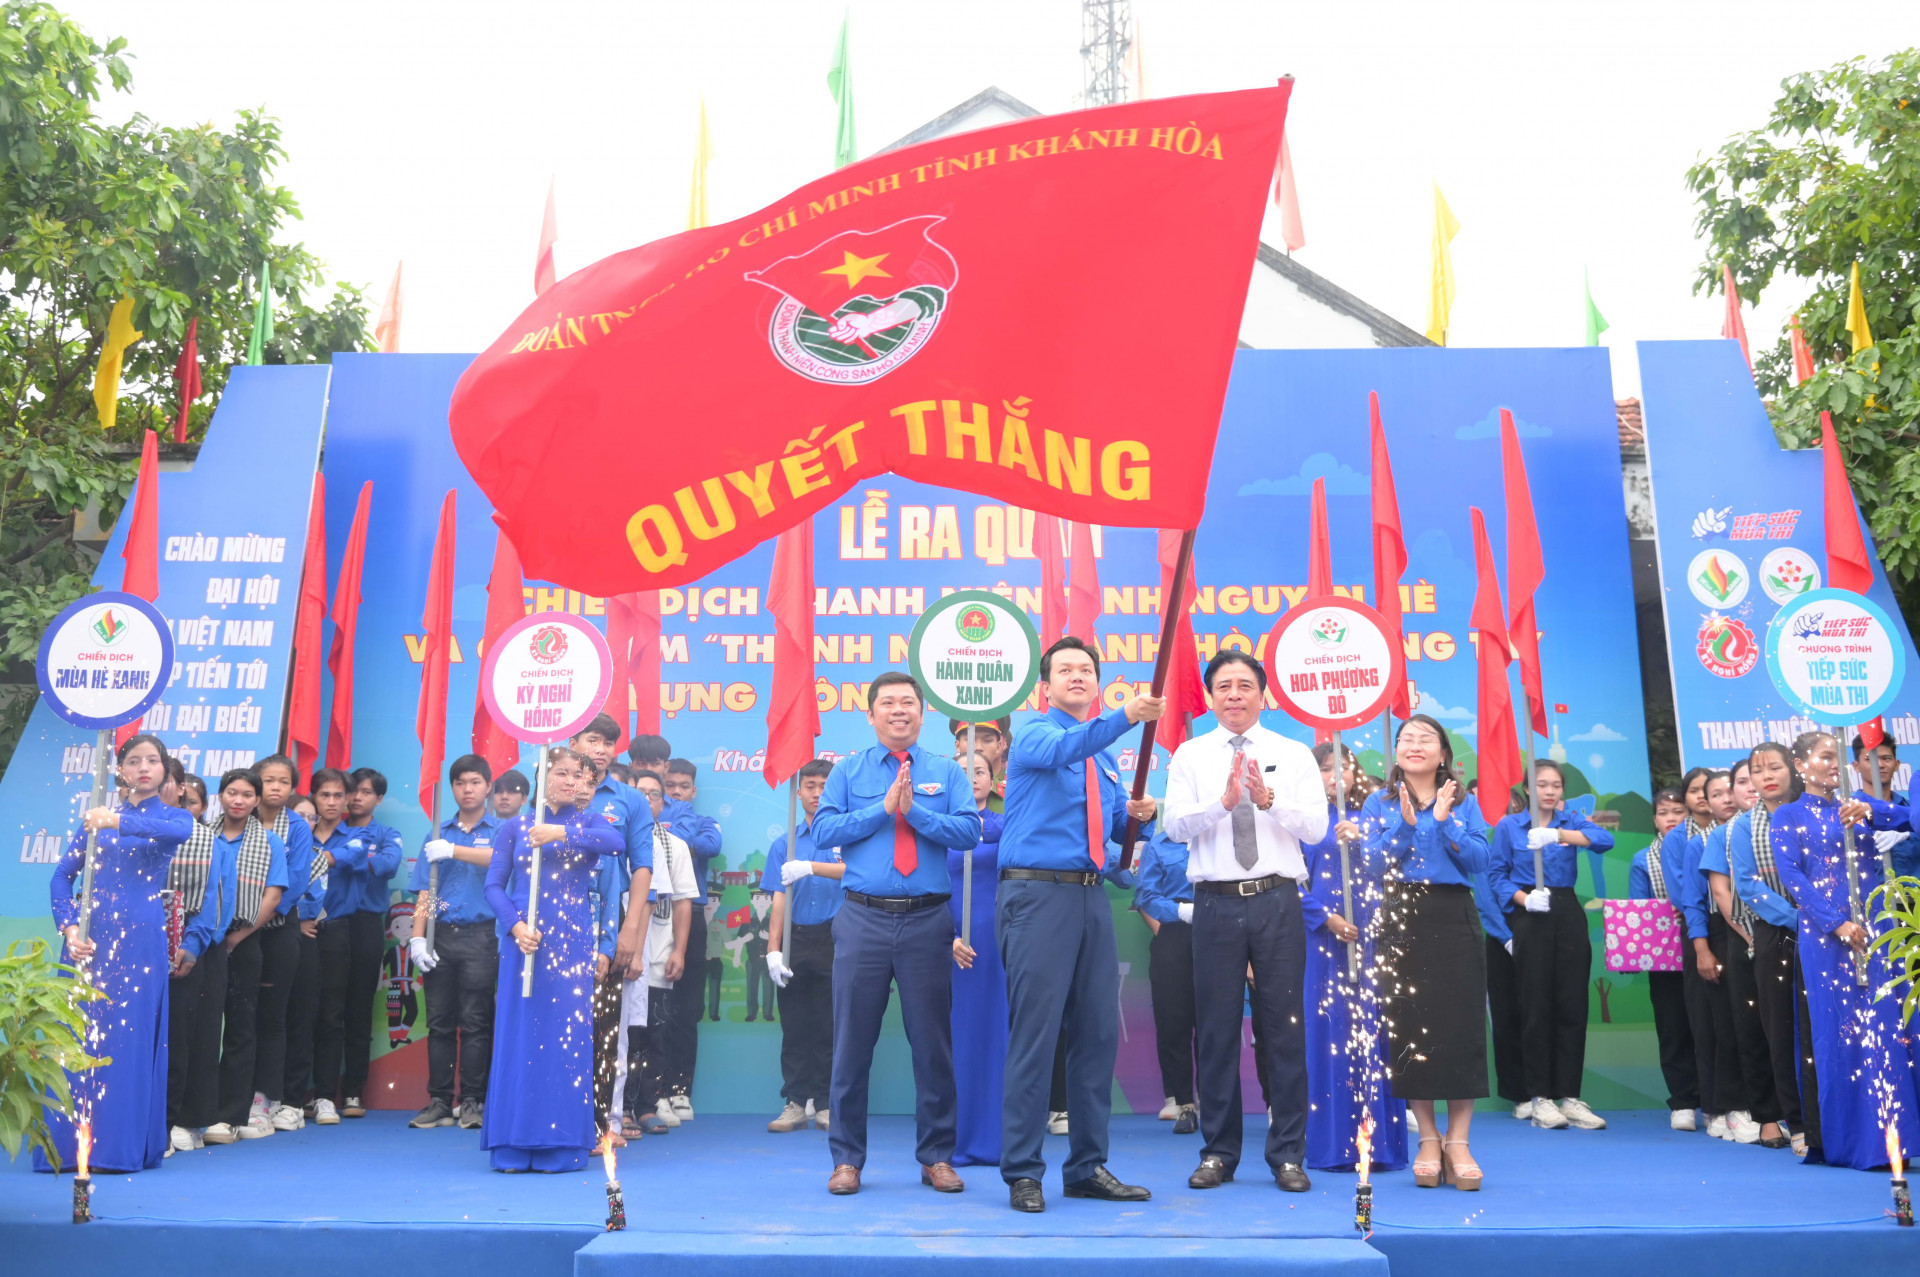 Lãnh đạo tỉnh trao cờ quyết thắng thực hiện các nhiệm vụ cho lãnh đạo Tỉnh đoàn.